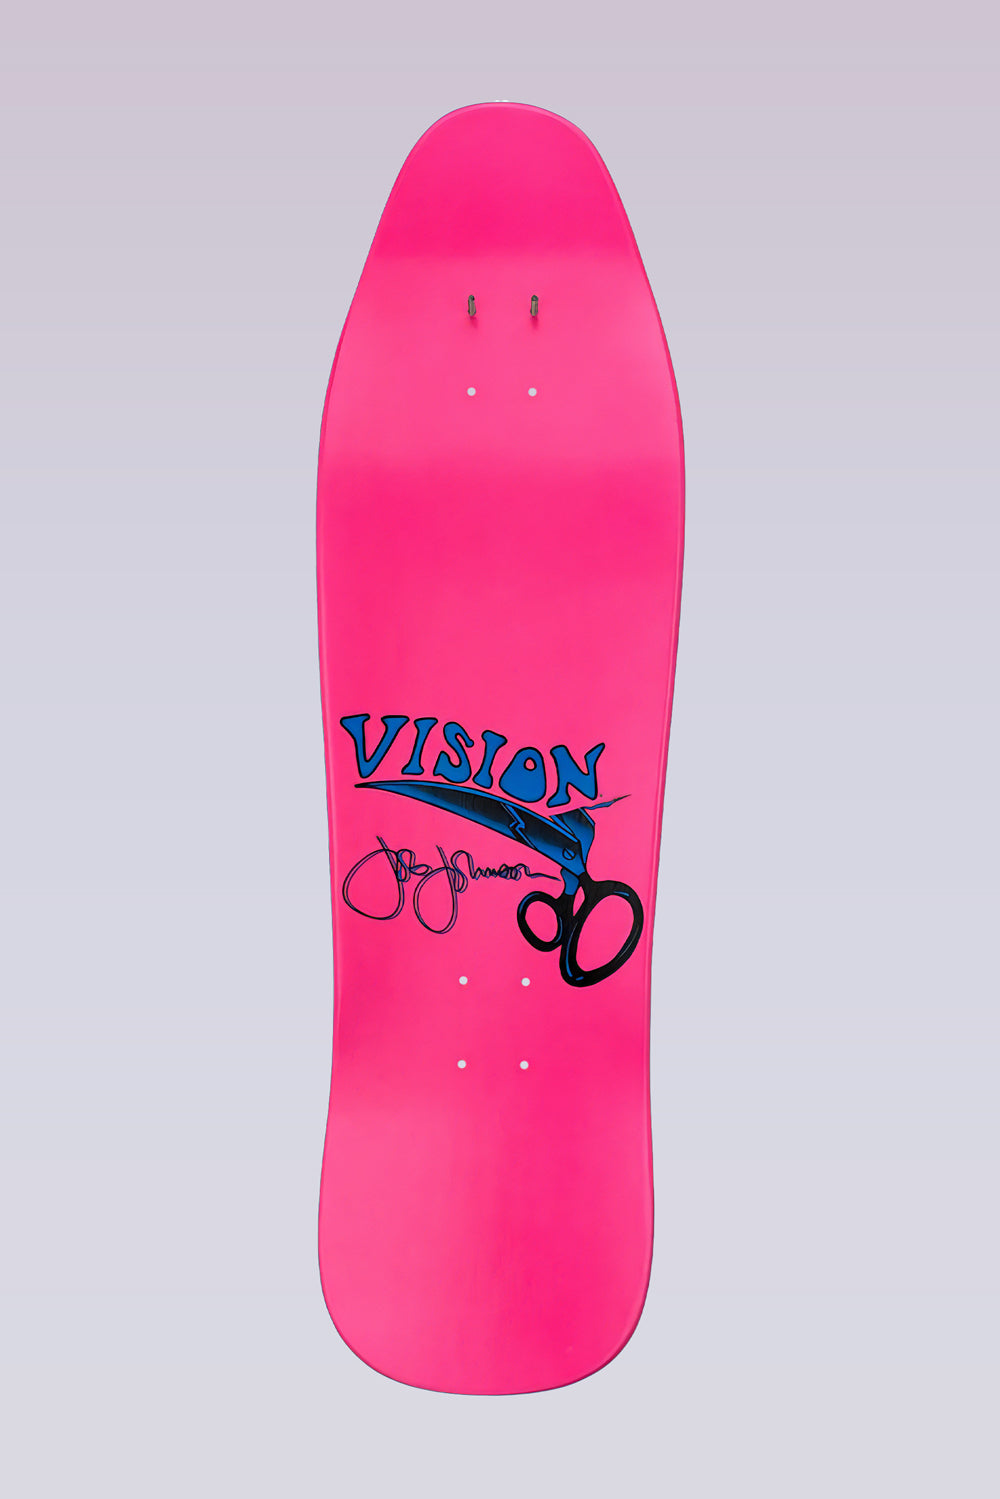 Joe Johnson Scissors Skateboard Deck - 9.5" x 32" - Pink Dip